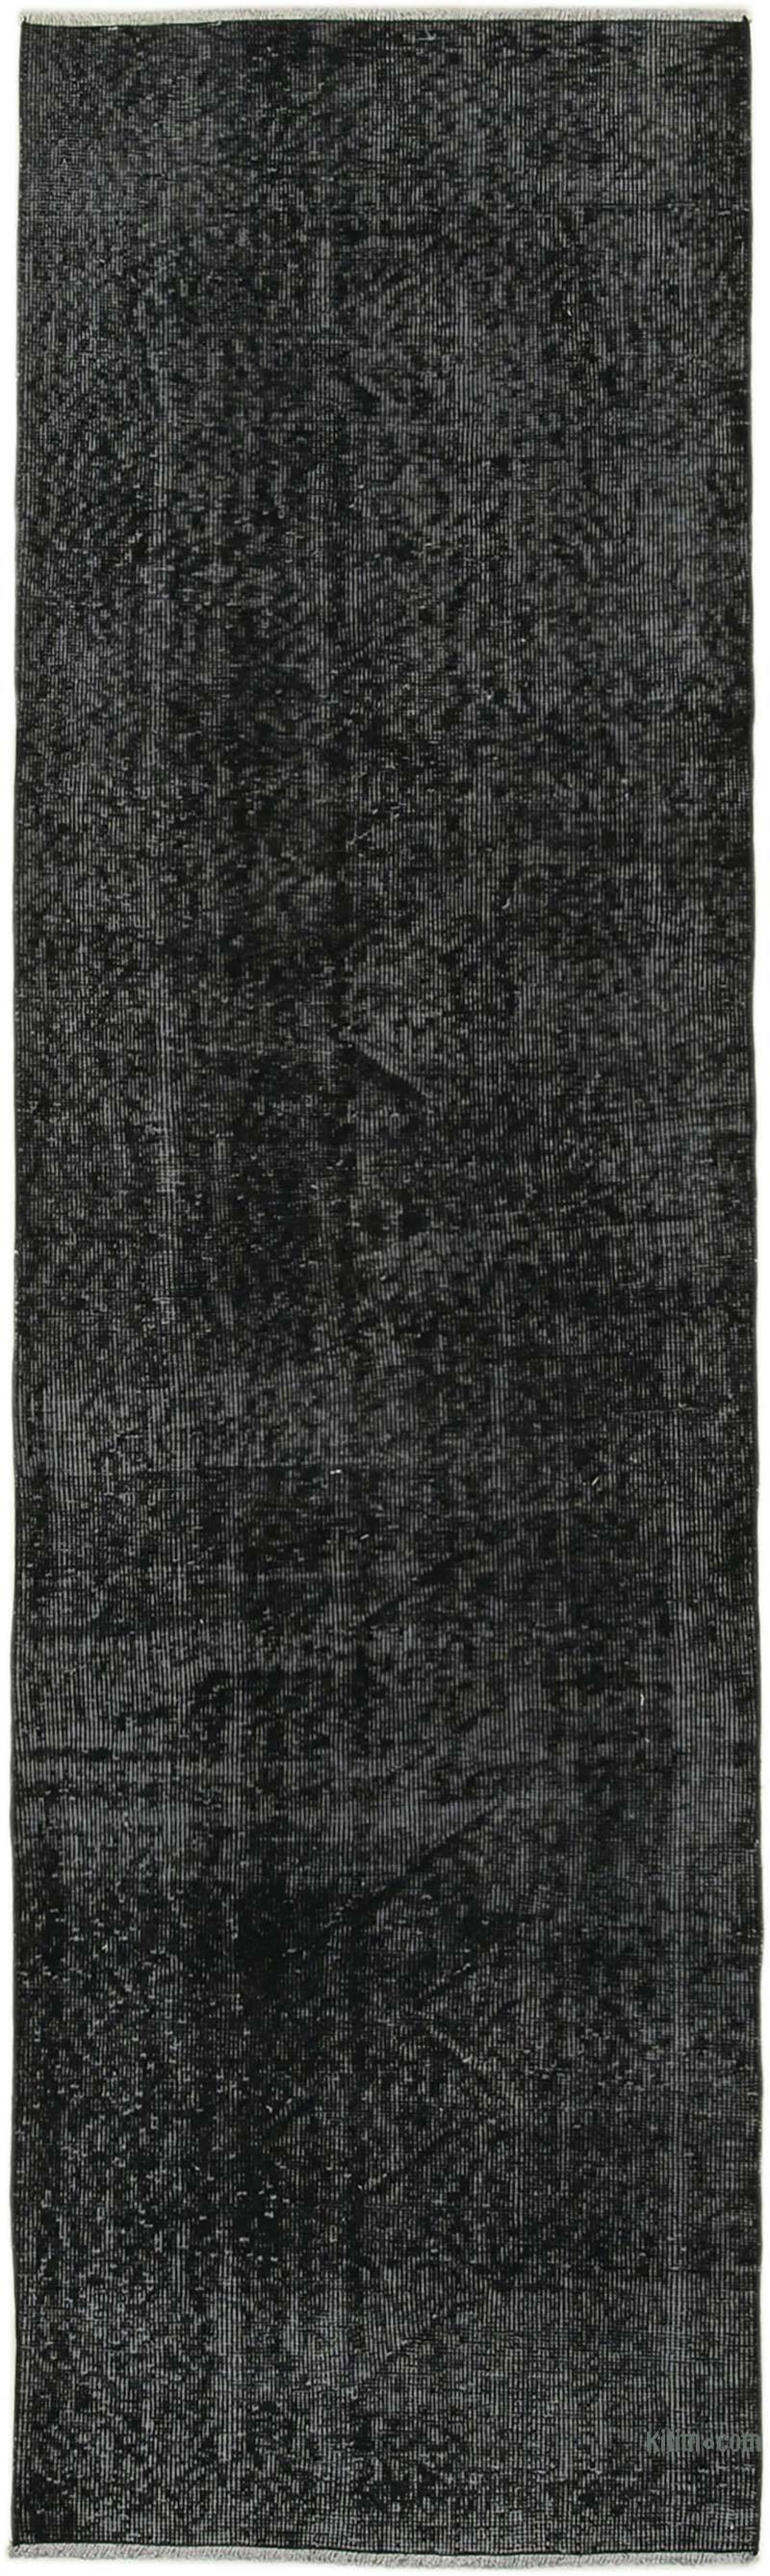 Siyah Boyalı El Dokuma Vintage Halı Yolluk - 81 cm x 278 cm - K0052213